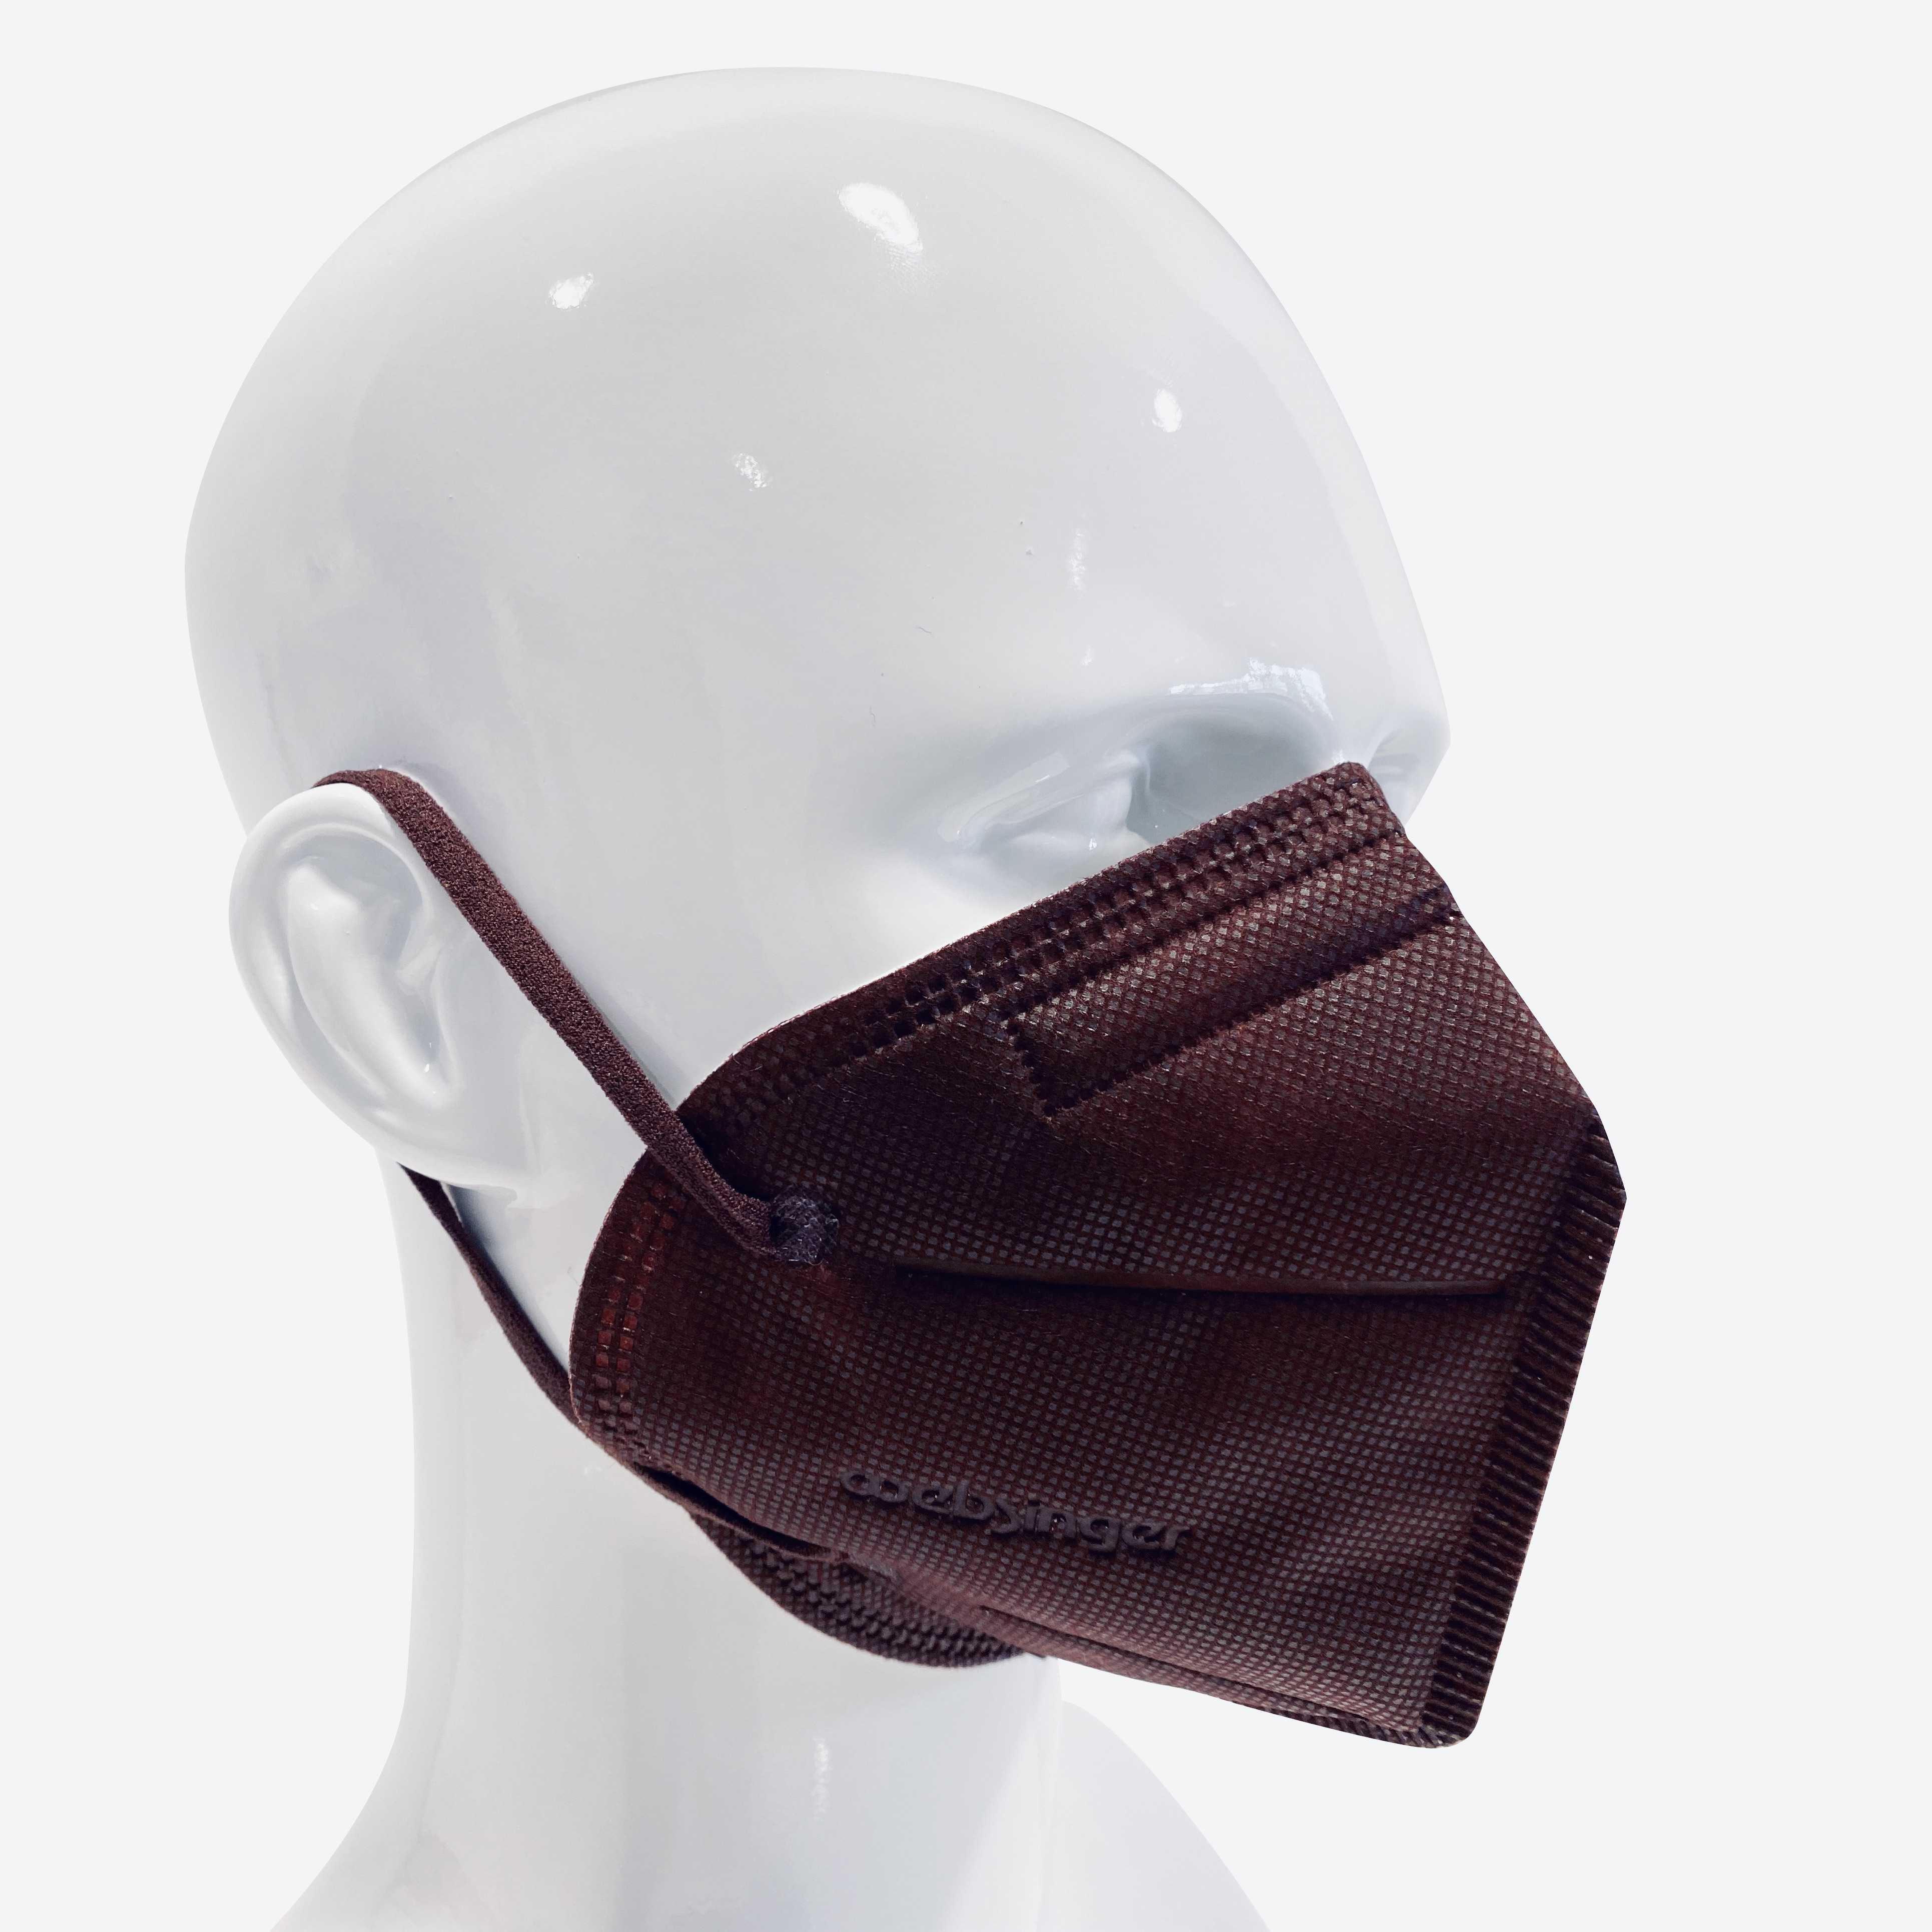 Qualitativ hochwertige FFP2-Schutzmasken - CHESTNUT EDITION 